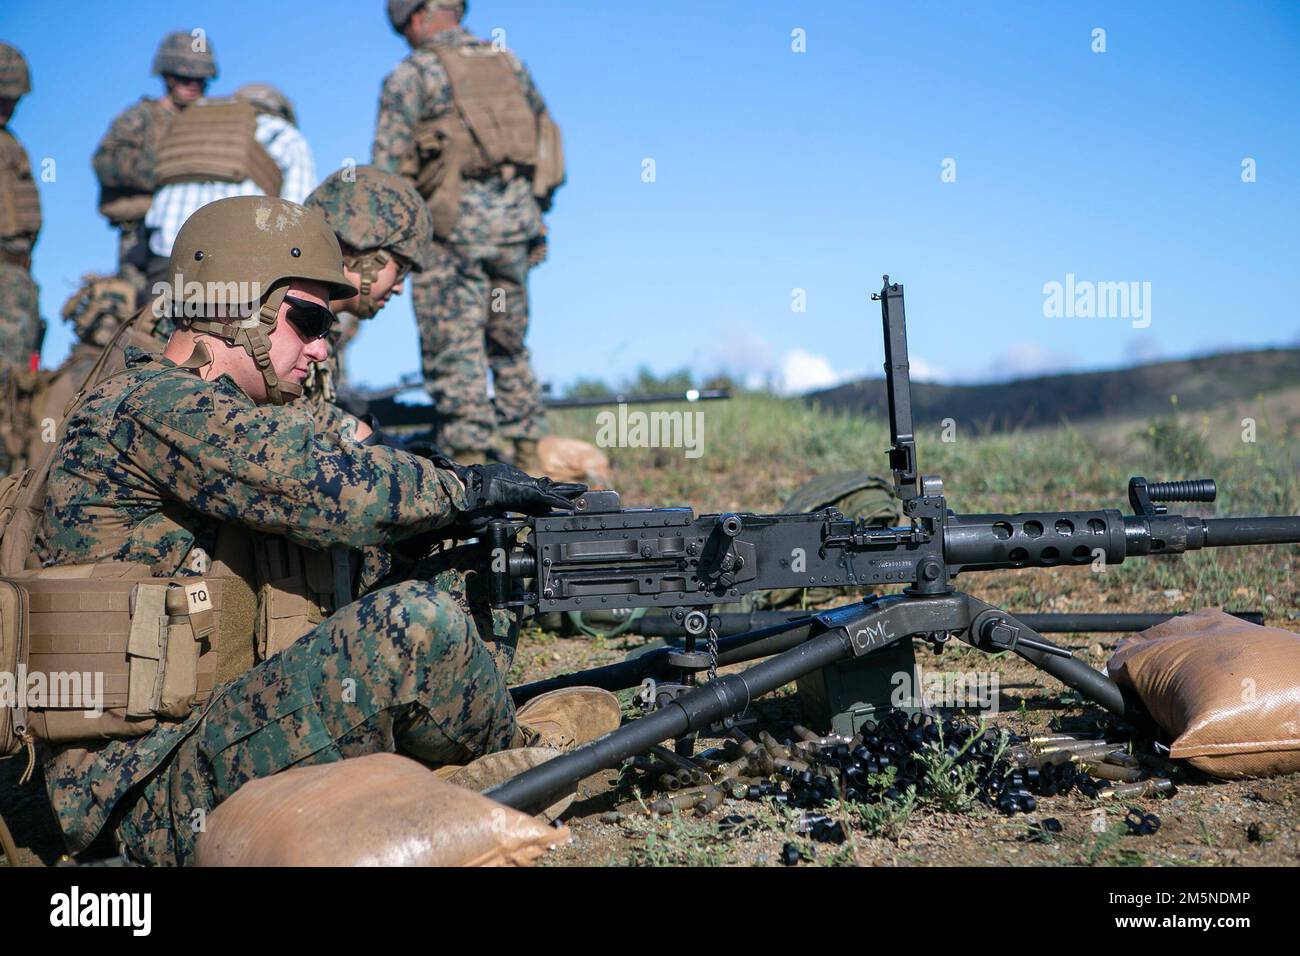 USA Quentin Hill, ein Artilleriesystemtechniker mit 1. Wartungsbataillon, 1. Marine Logistics Group, I Marine Expeditionary Force, räumt ein M2A1-Maschinengewehr während einer Feuerübung in Camp Pendleton, Kalifornien, am 29. März 2022. Die Feuerübung wurde durchgeführt, um die Kampffektivität aufrechtzuerhalten und Marines zu ermöglichen, mit dem M2A1-Maschinengewehr zu trainieren. Stockfoto